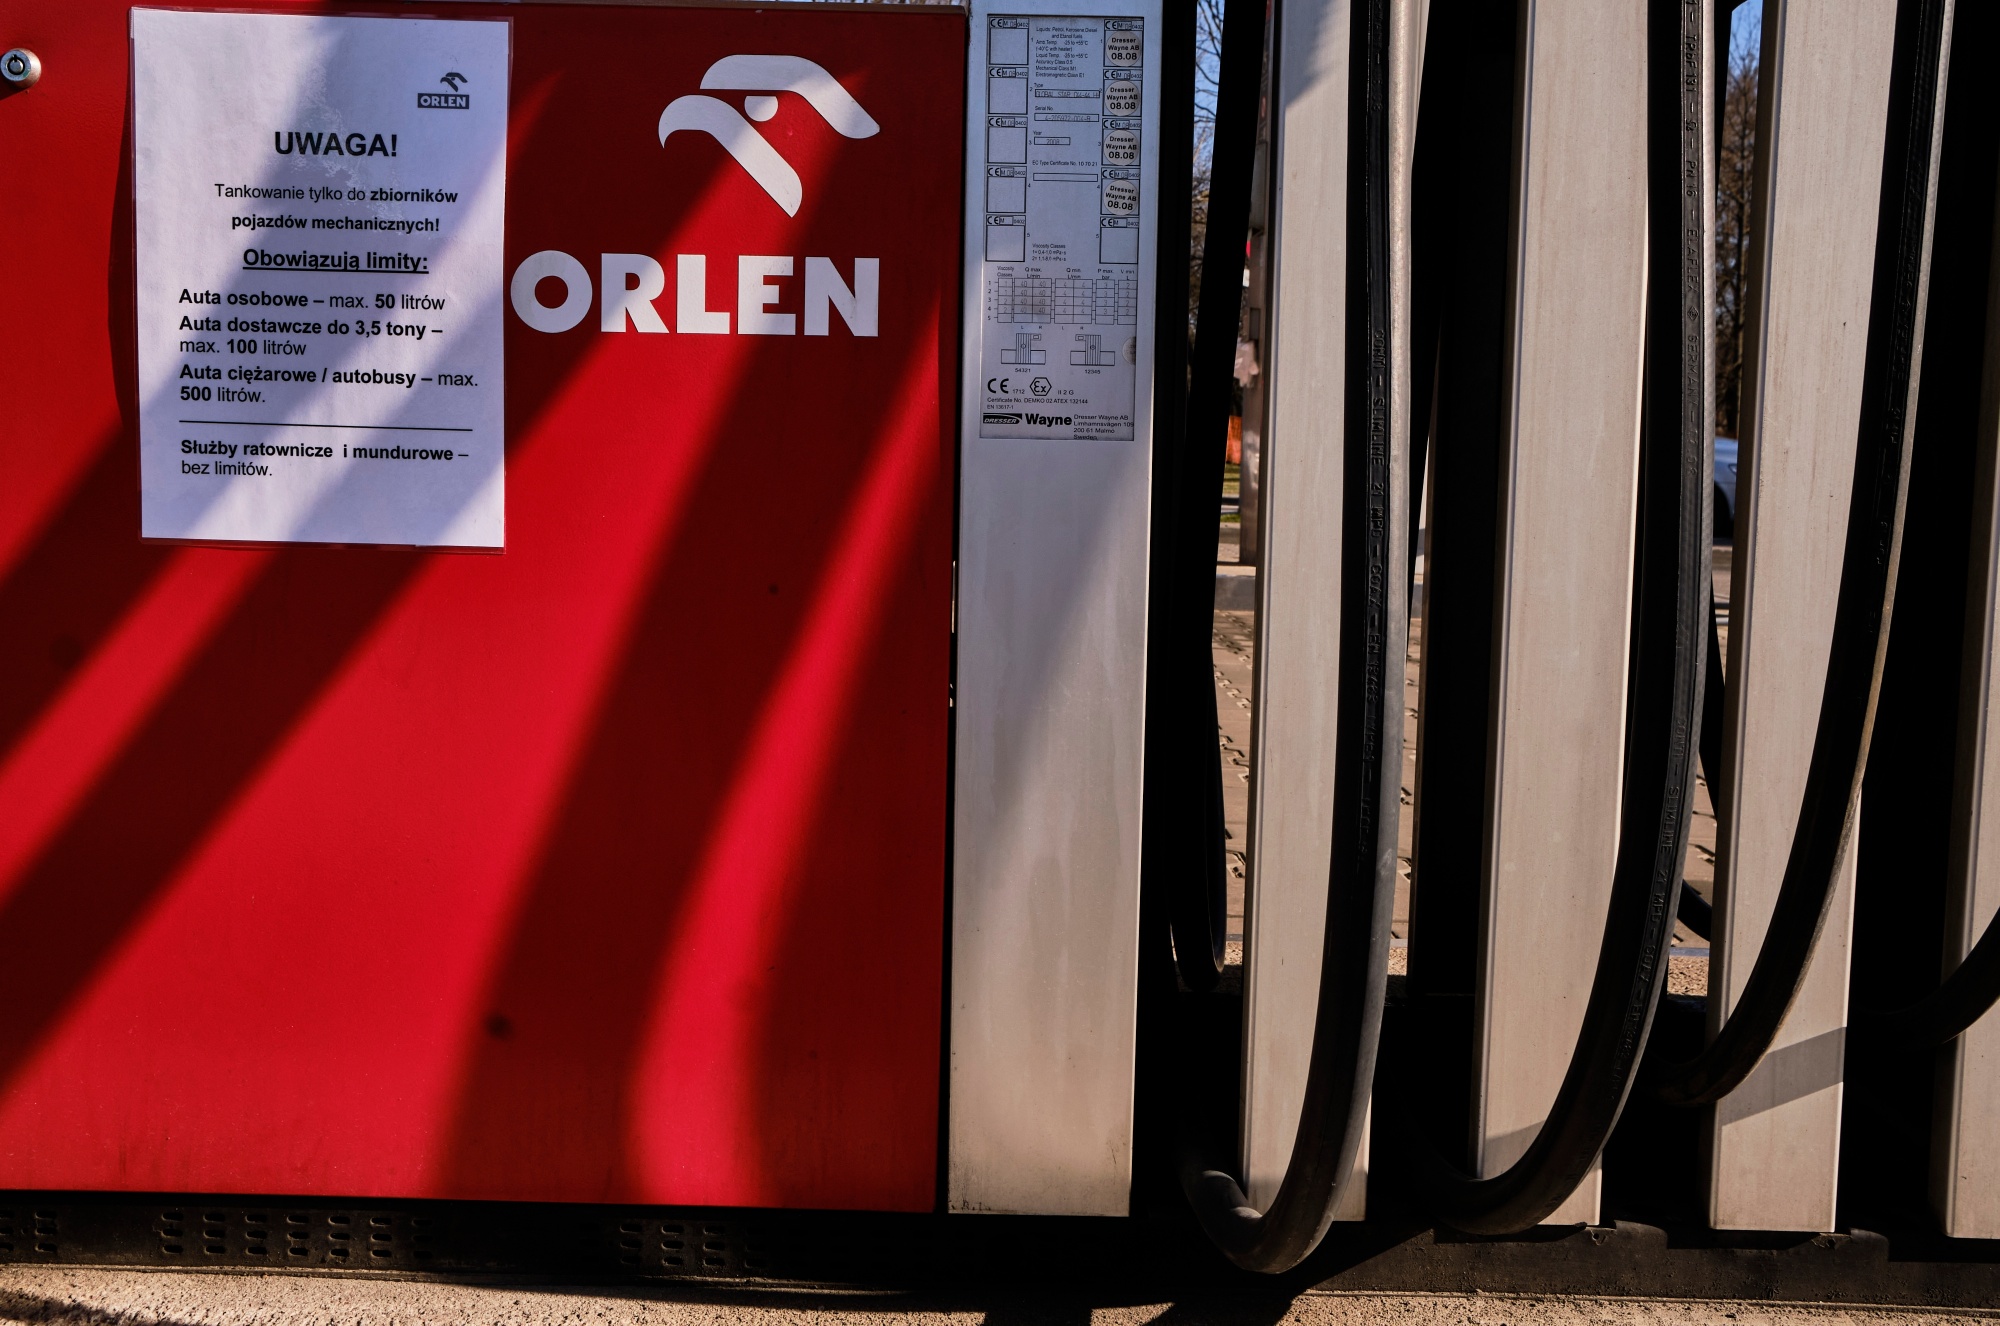 Diesel Hoarding Unnerves Polish Refiner in Push to Lower Prices - BNN  Bloomberg